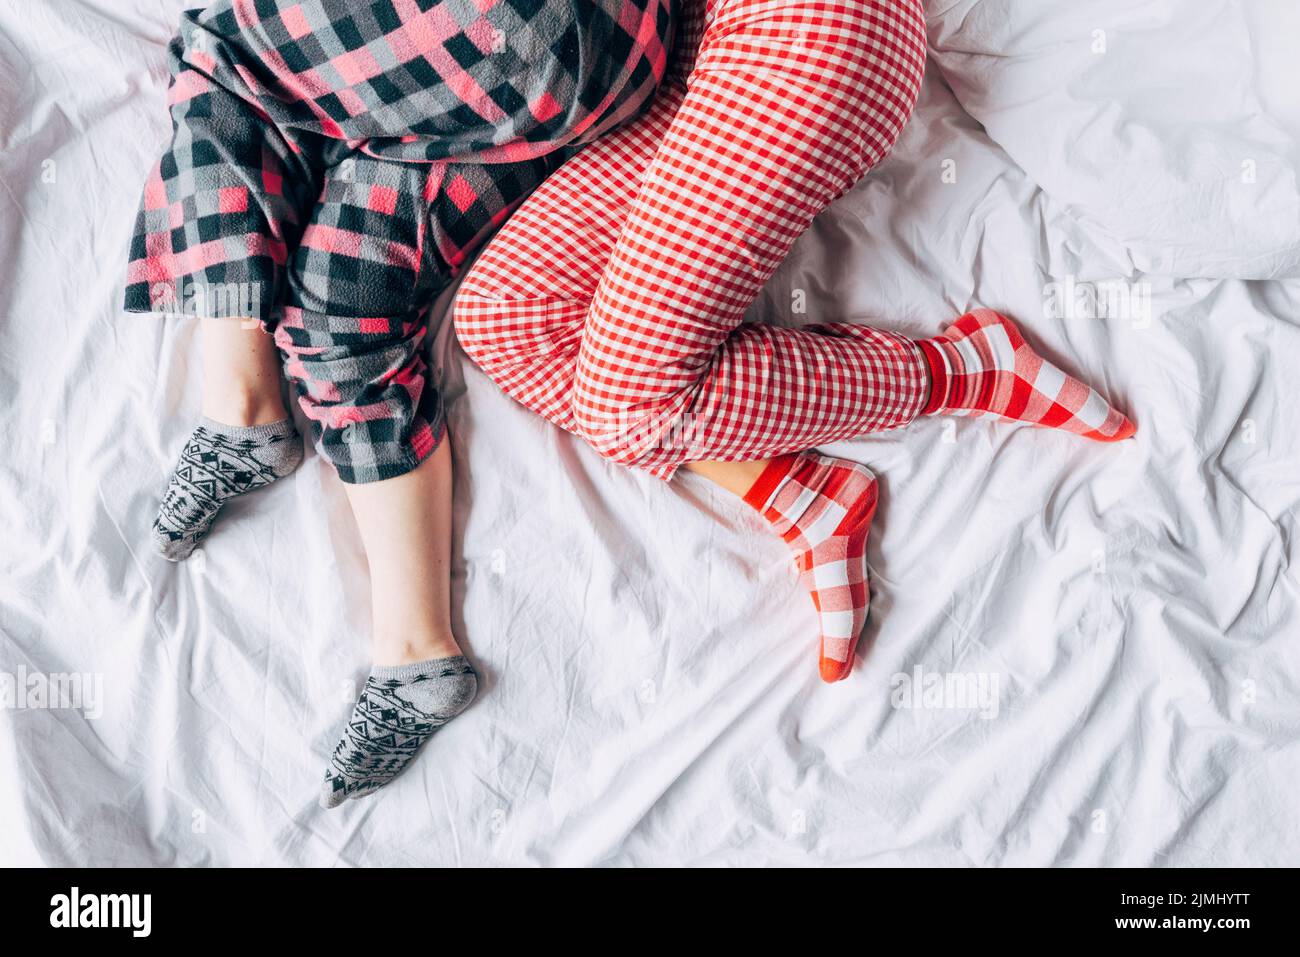 chaussettes de pyjama colorées pour femmes lit de couchage Banque D'Images